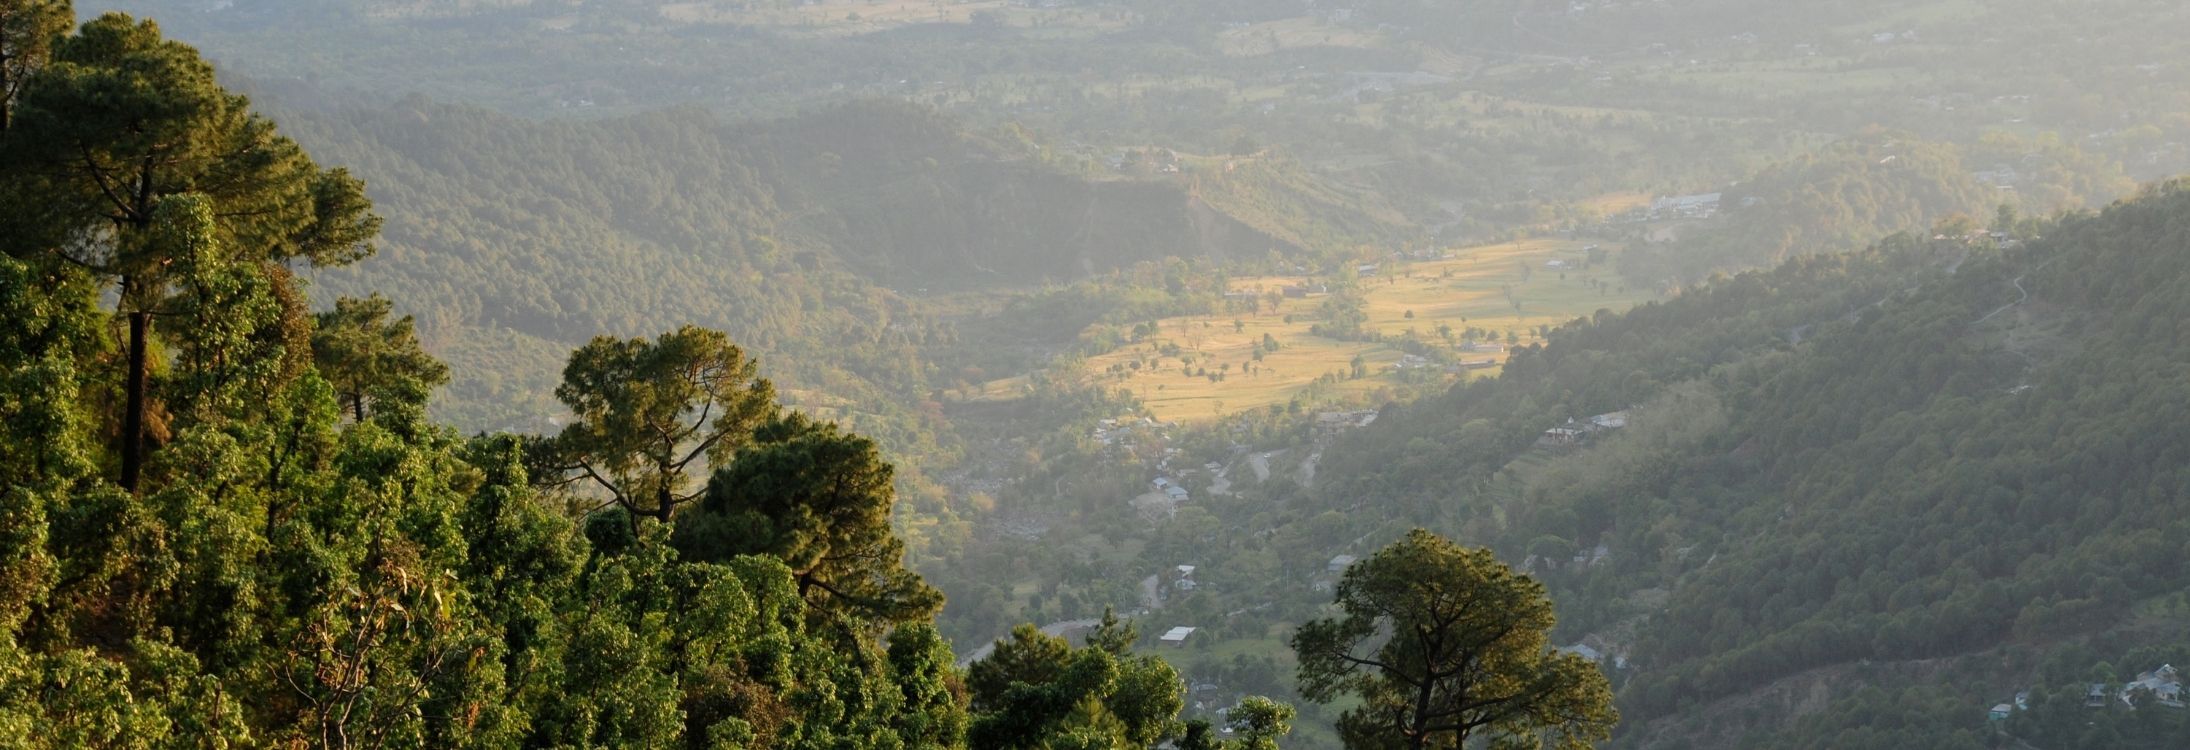 Kangra valley, Himachal Pradesh